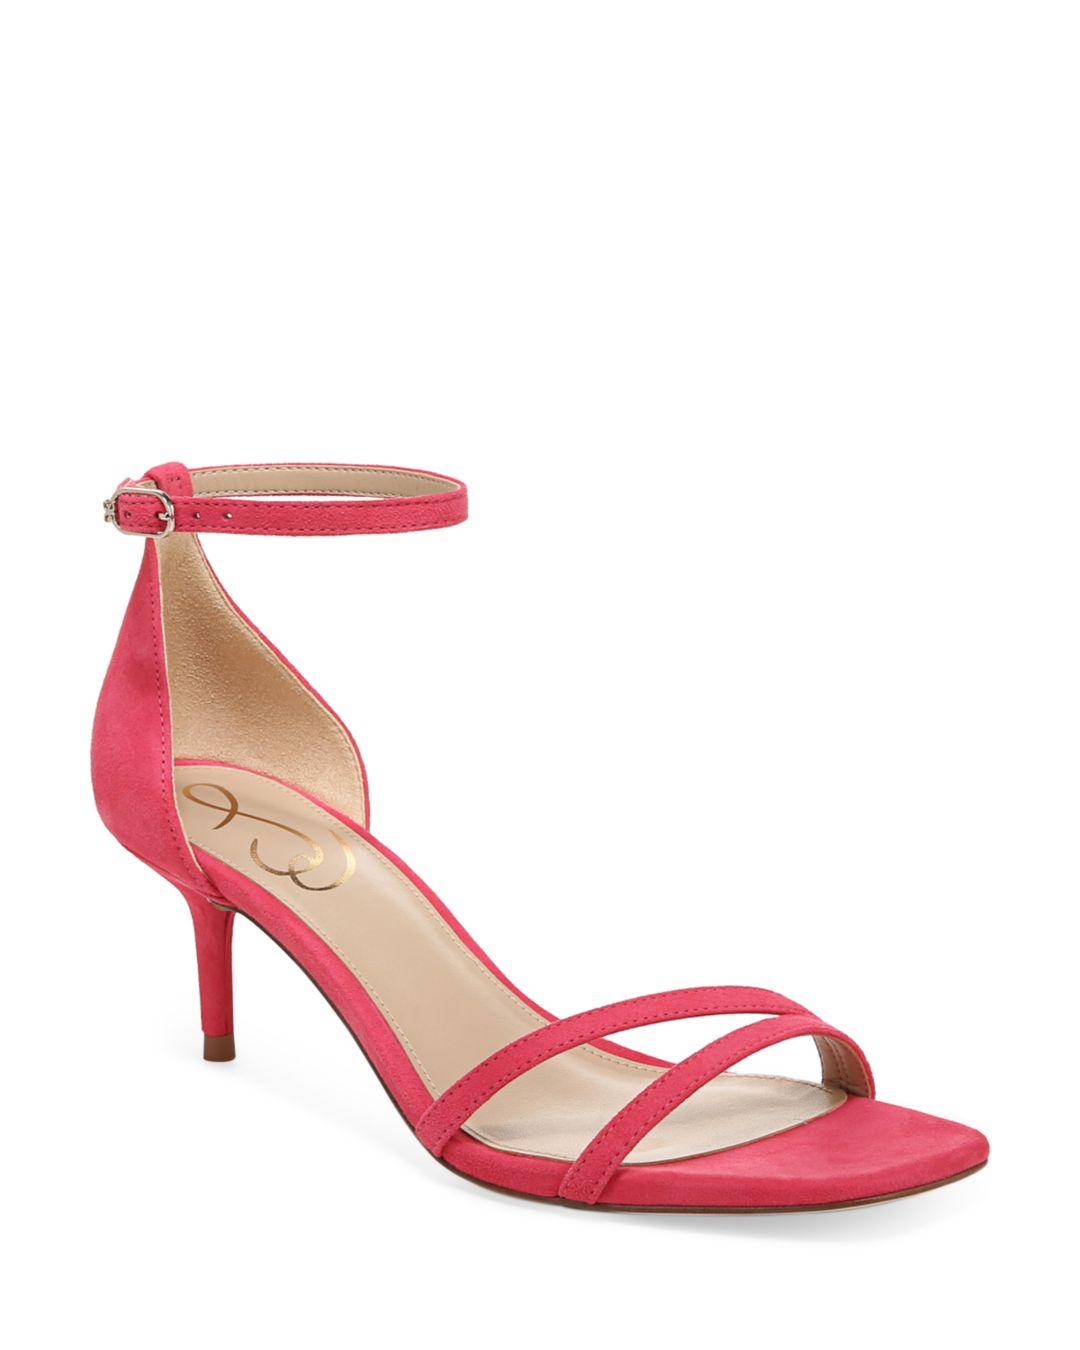 Sam Edelman Peonie Ankle Strap High Heel Sandals in Pink | Lyst